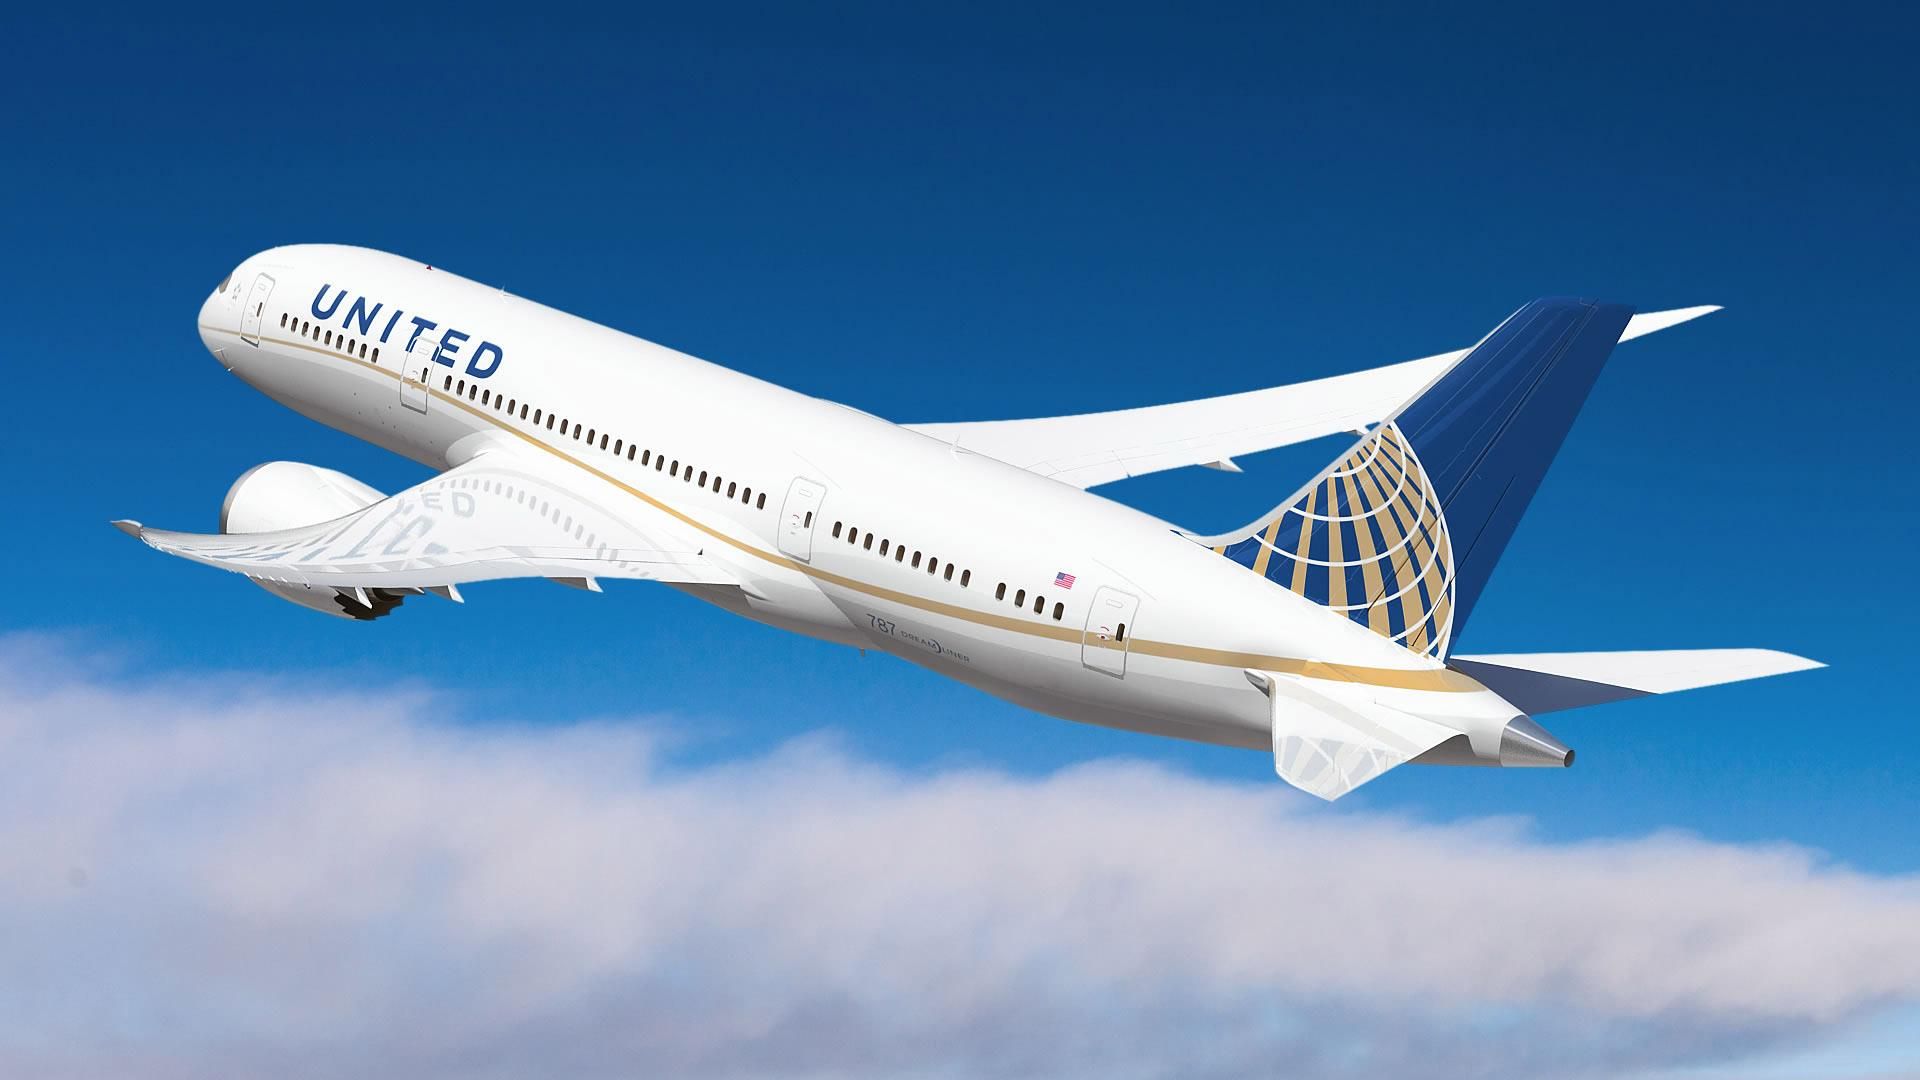 Після скандалу з пасажиром United Airlines втратила 600 мільйонів доларів